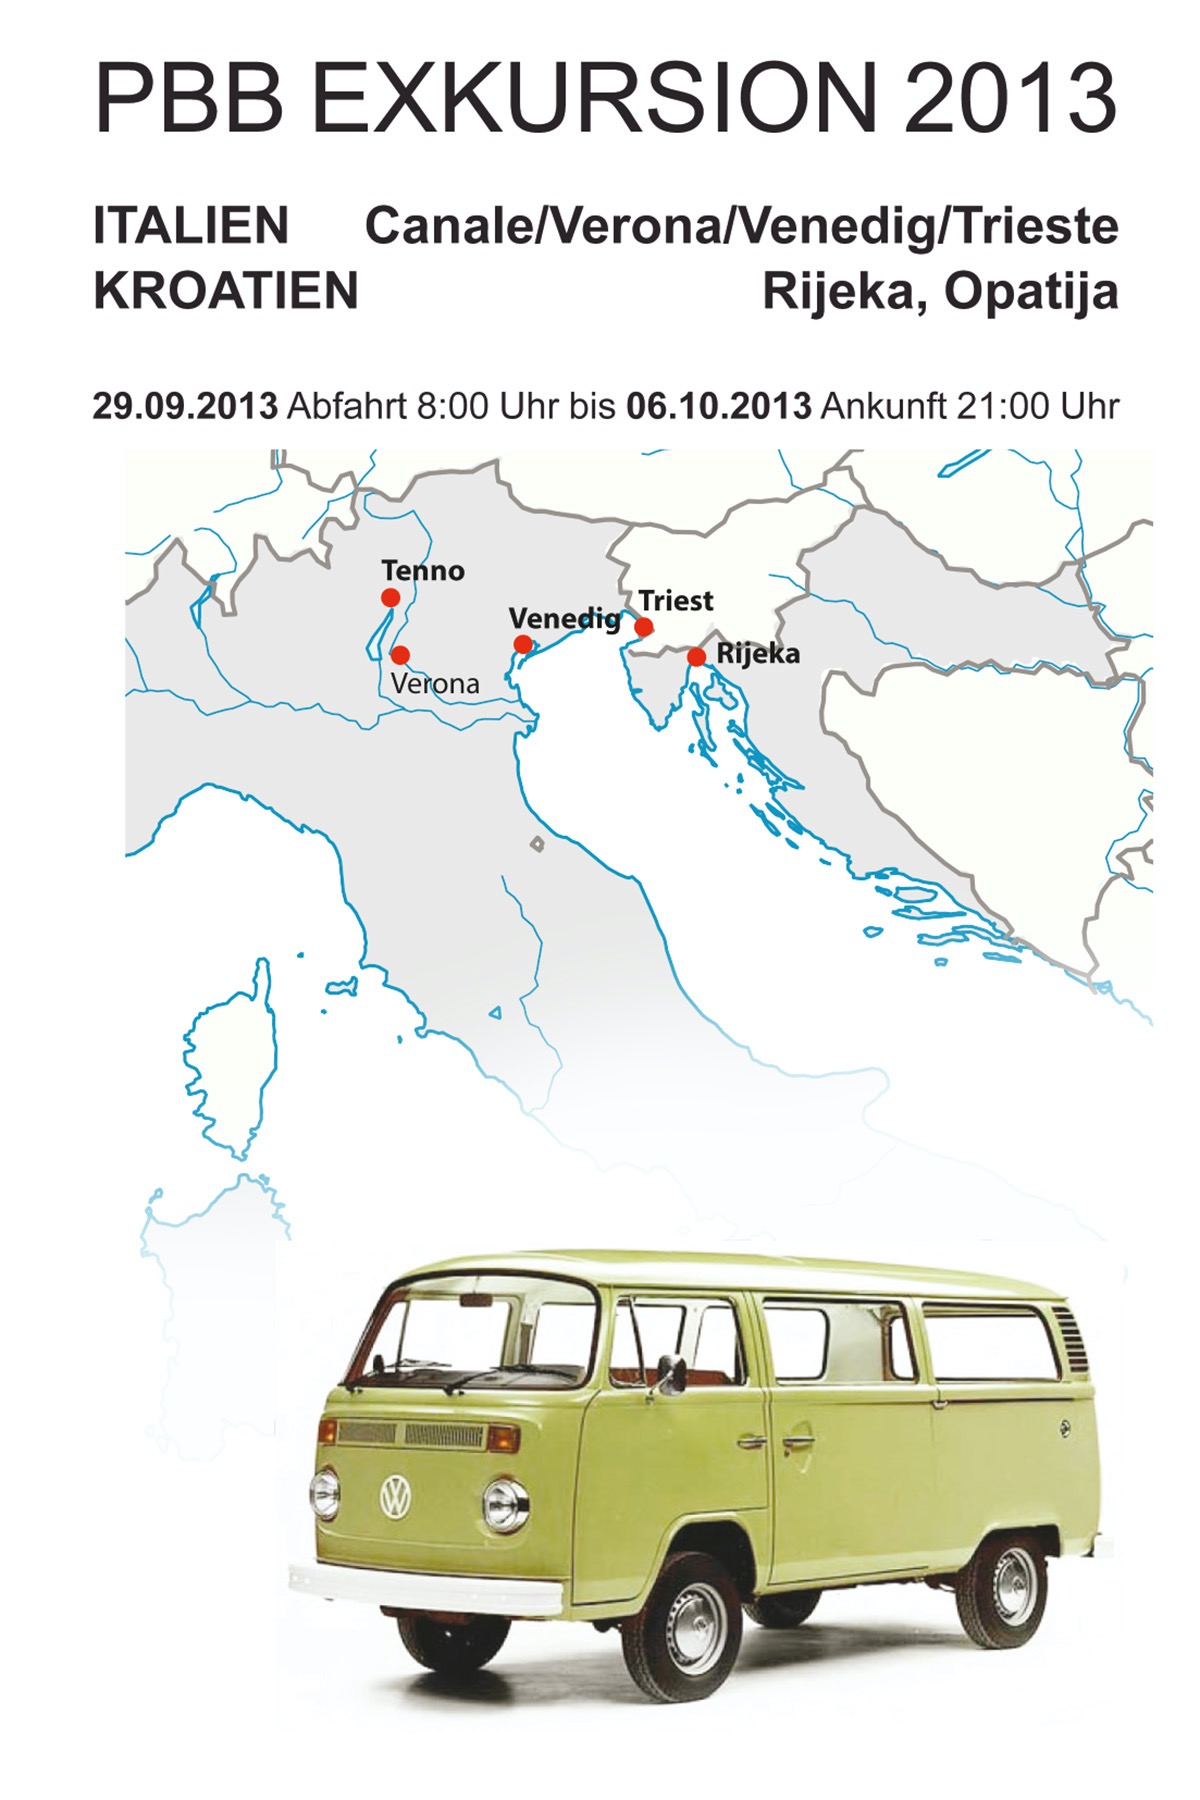 Exkursion Italien / Kroatien 2013